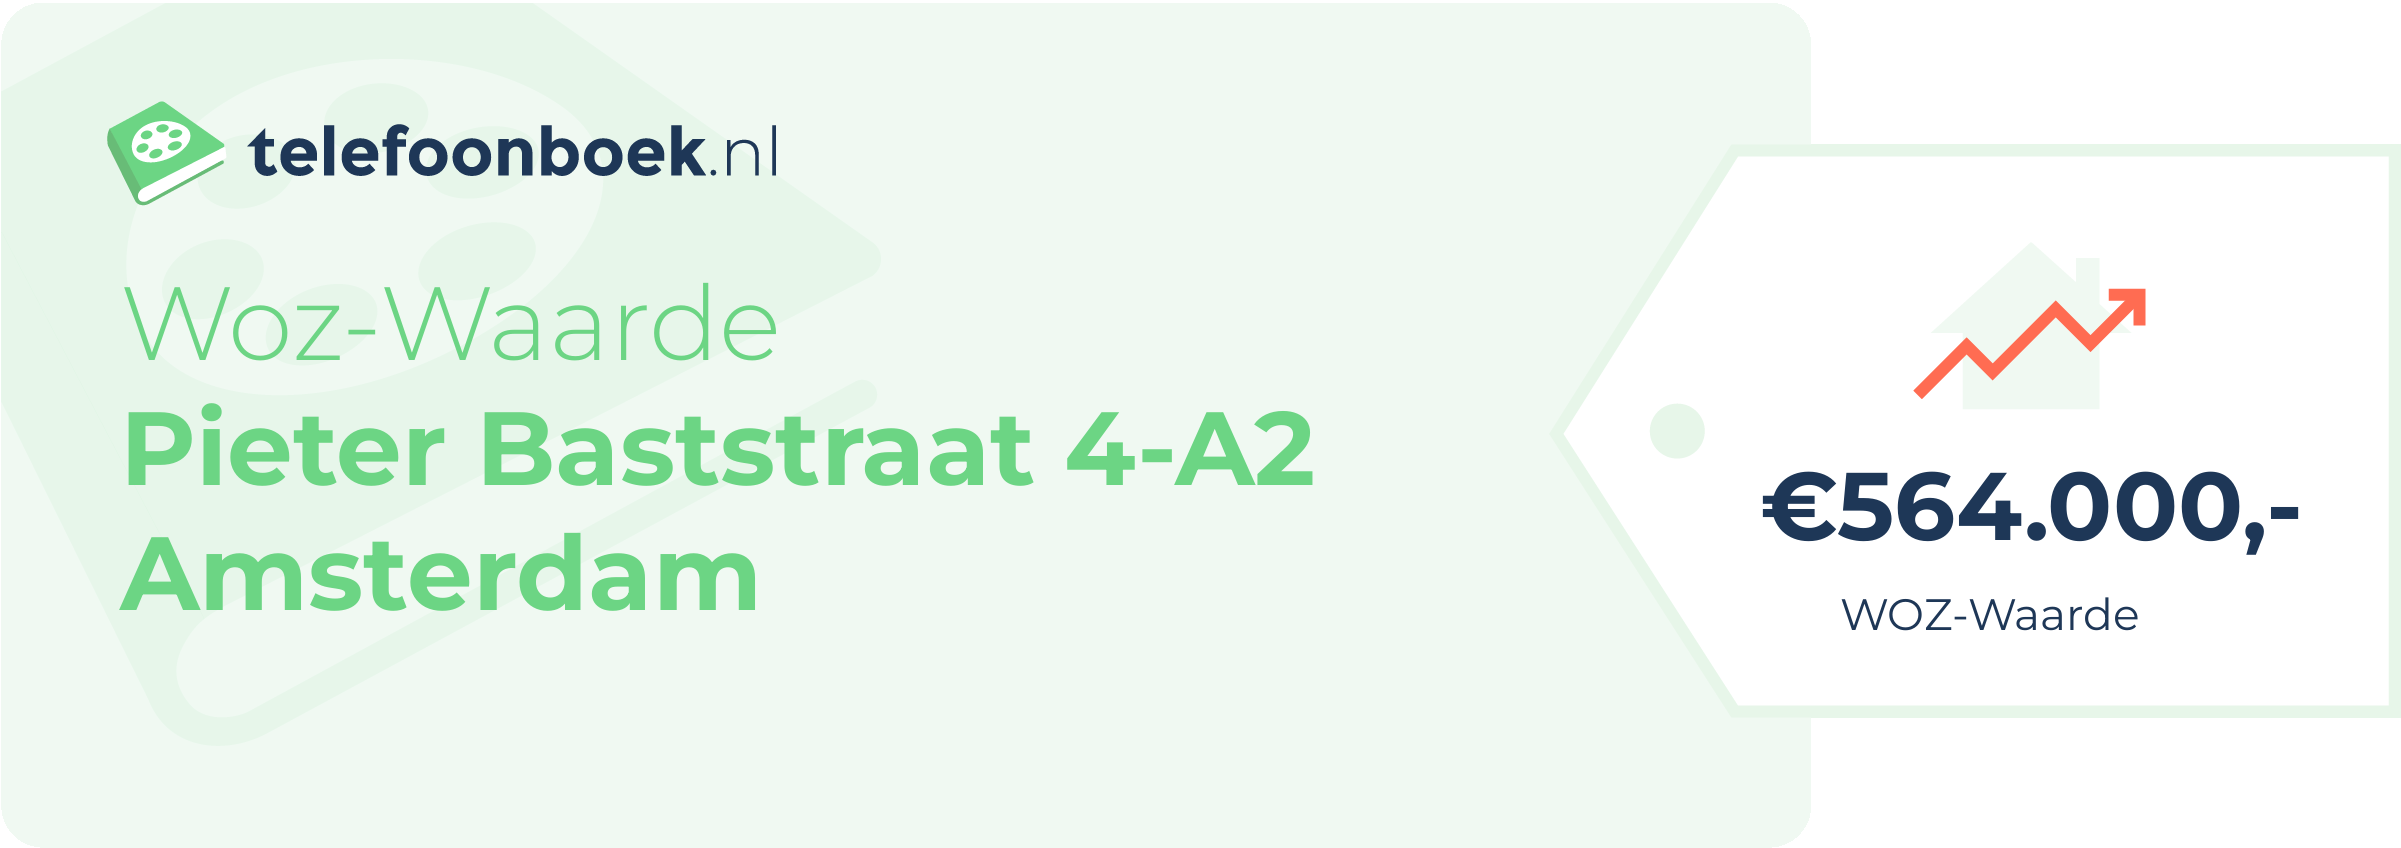 WOZ-waarde Pieter Baststraat 4-A2 Amsterdam